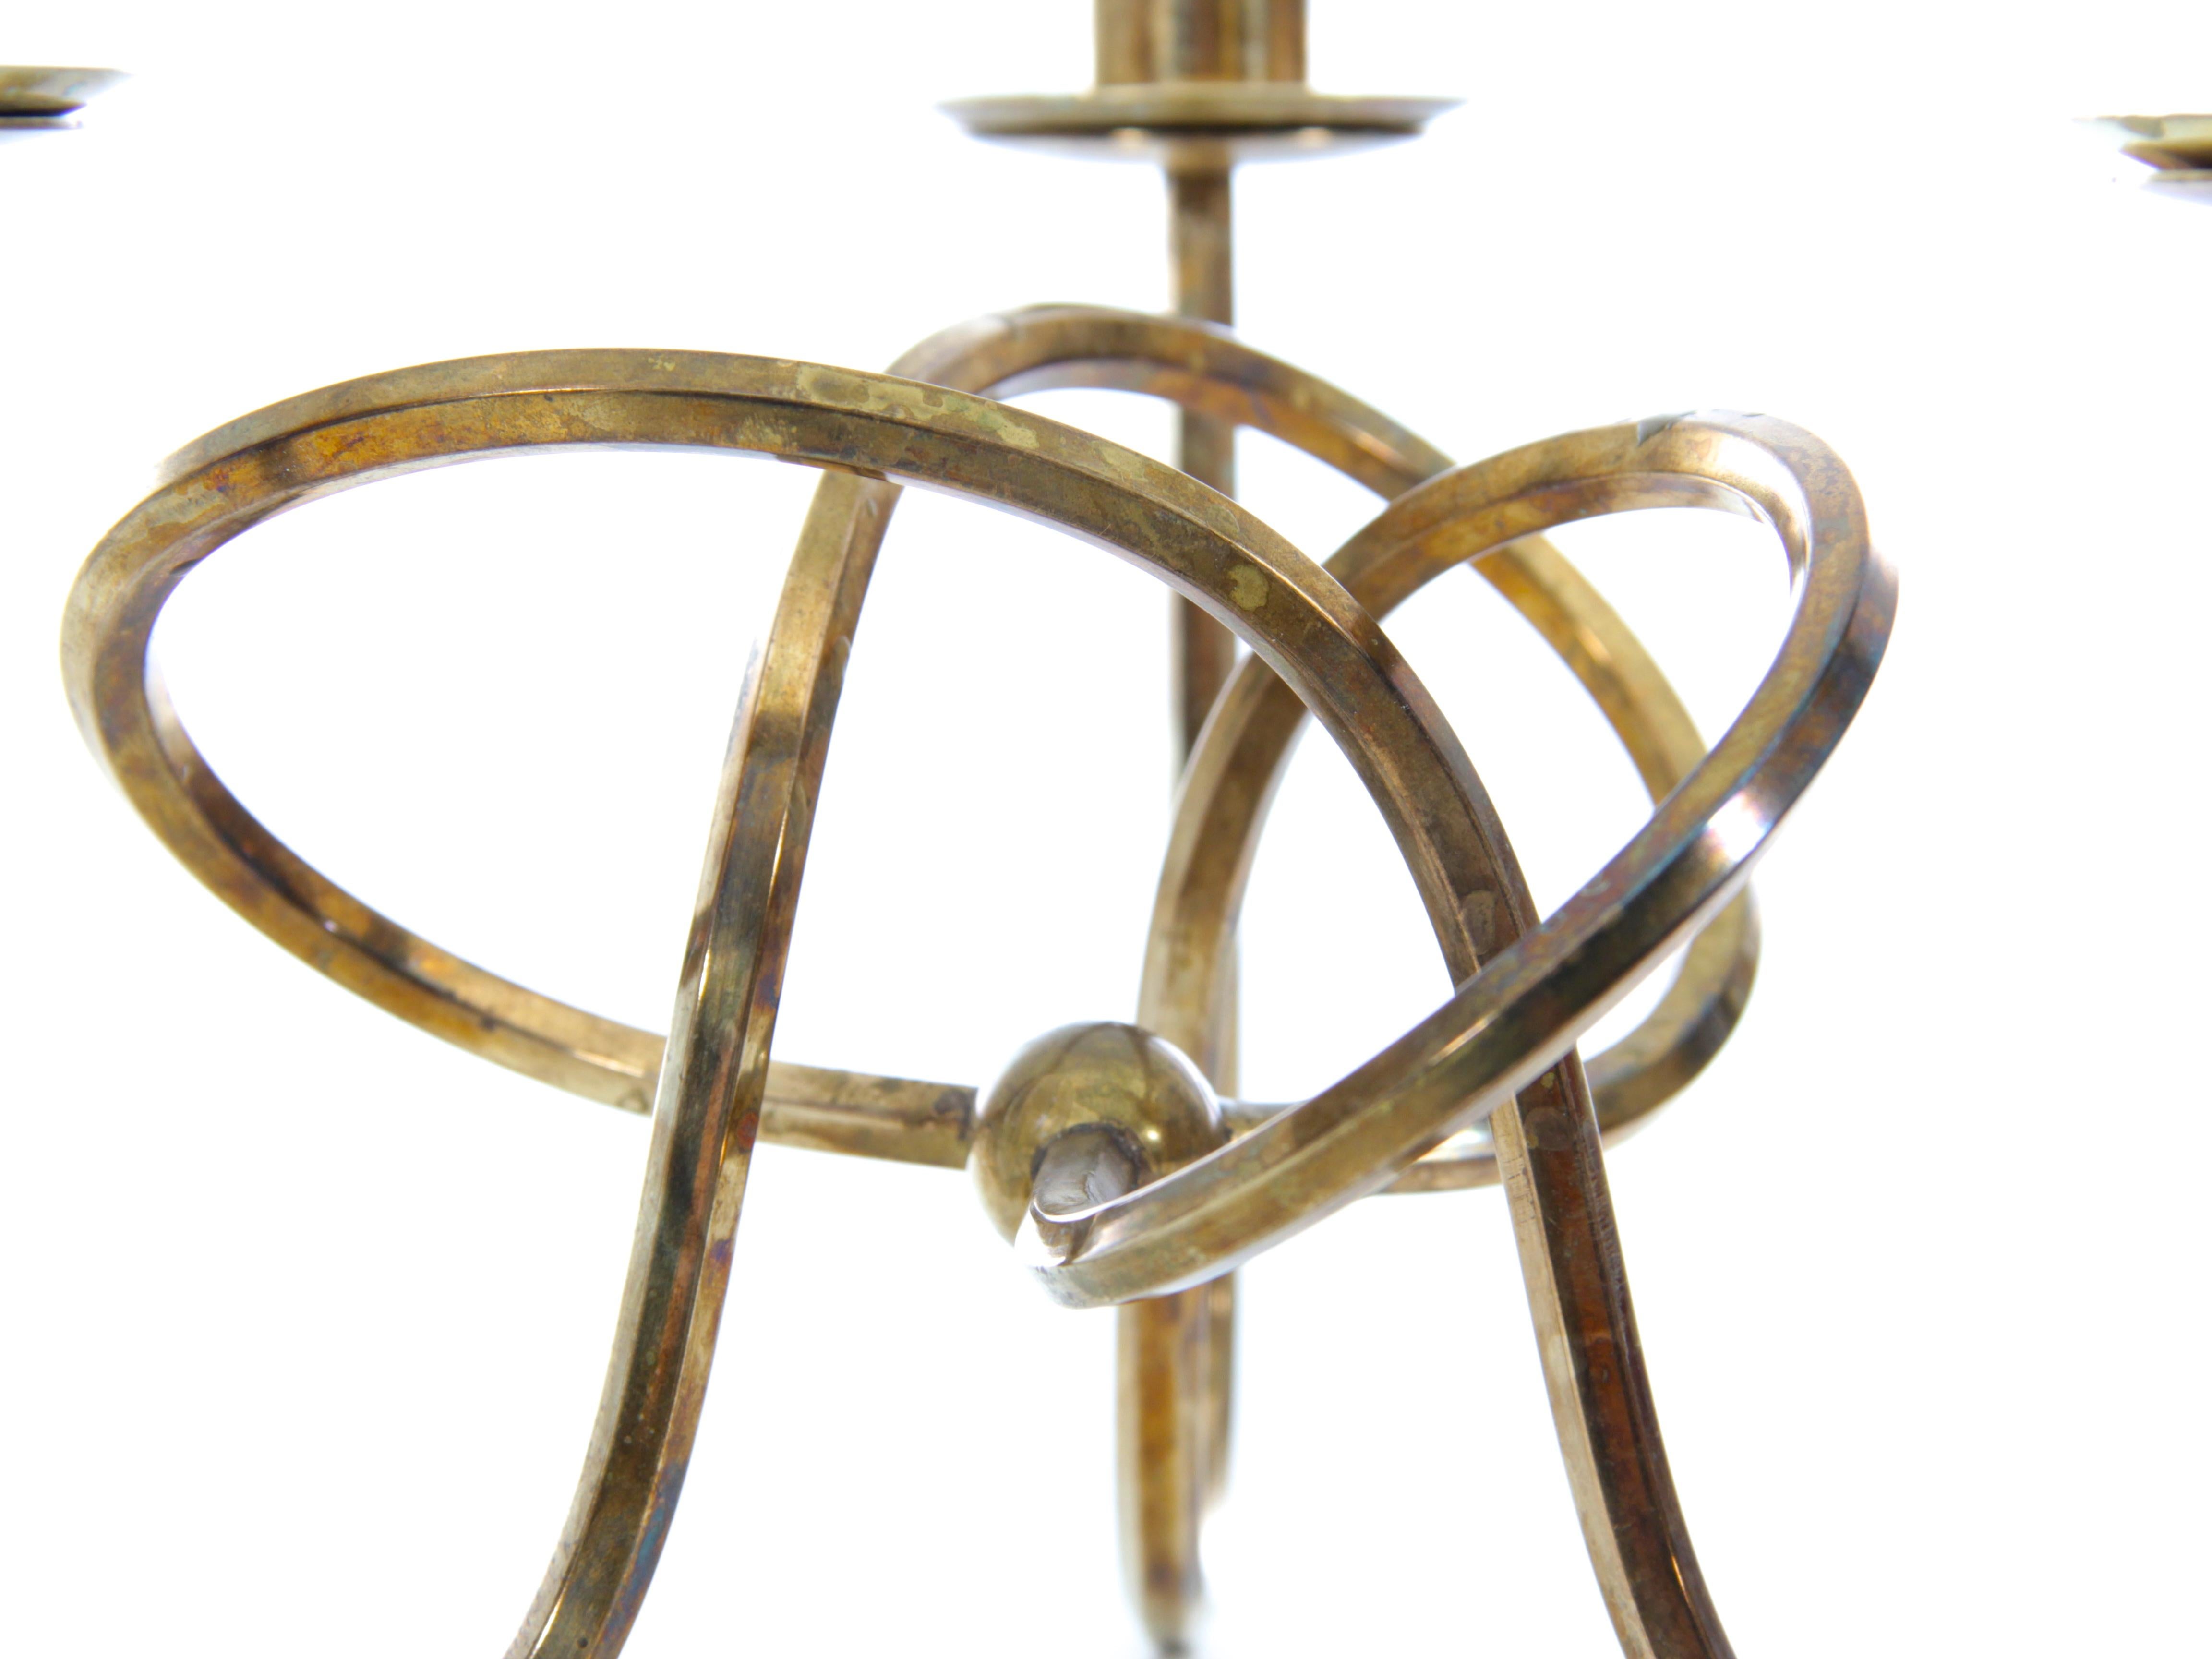 Scandinavian Modern Mid-Century Modern Scandinavian Candlestick in Brass by Josef Frank